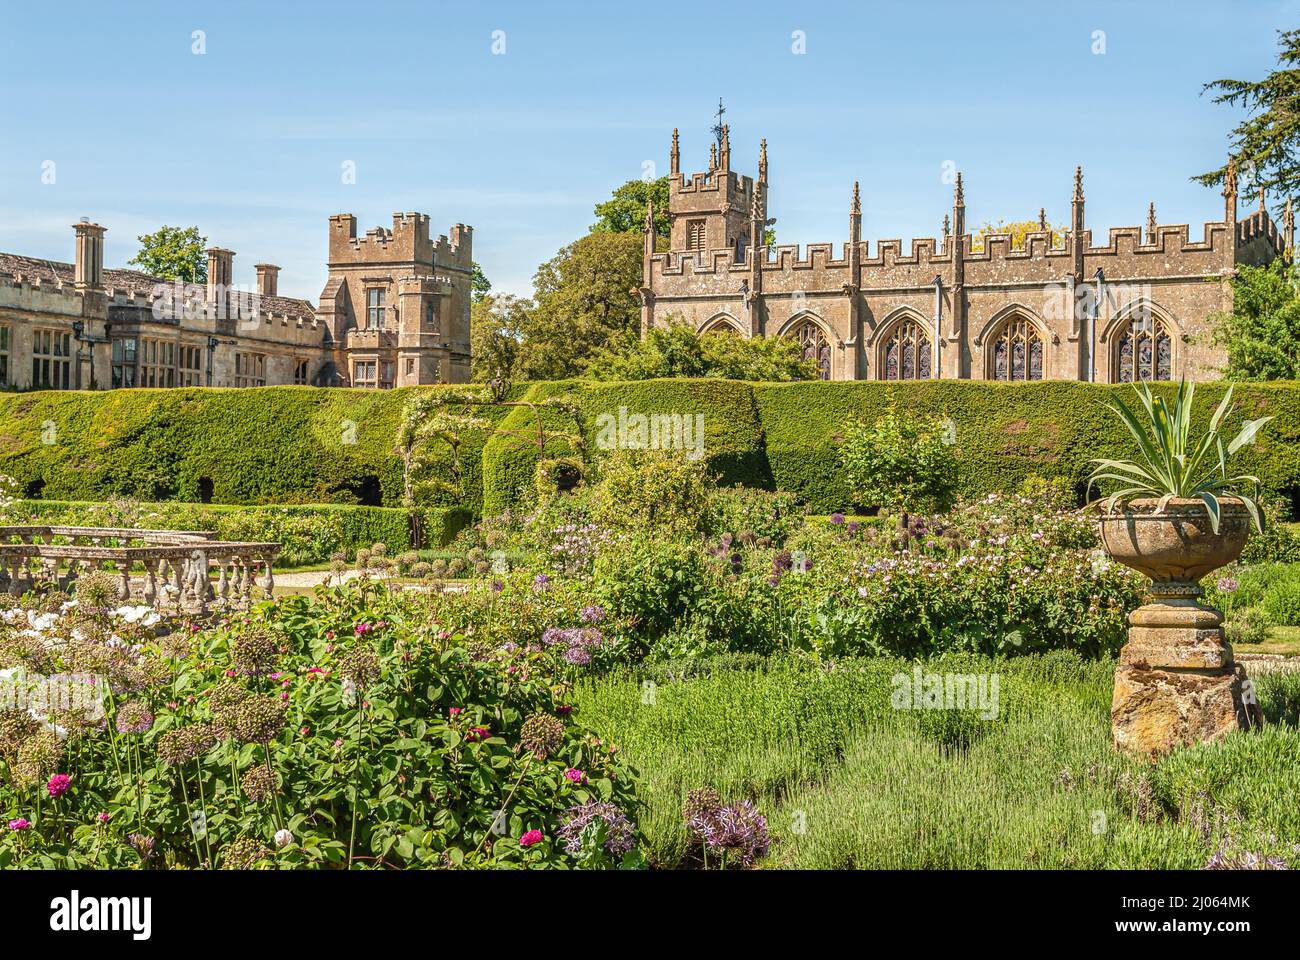 Queens Garden au château de Sudeley près de Winchcombe, Gloucestershire, Angleterre Banque D'Images